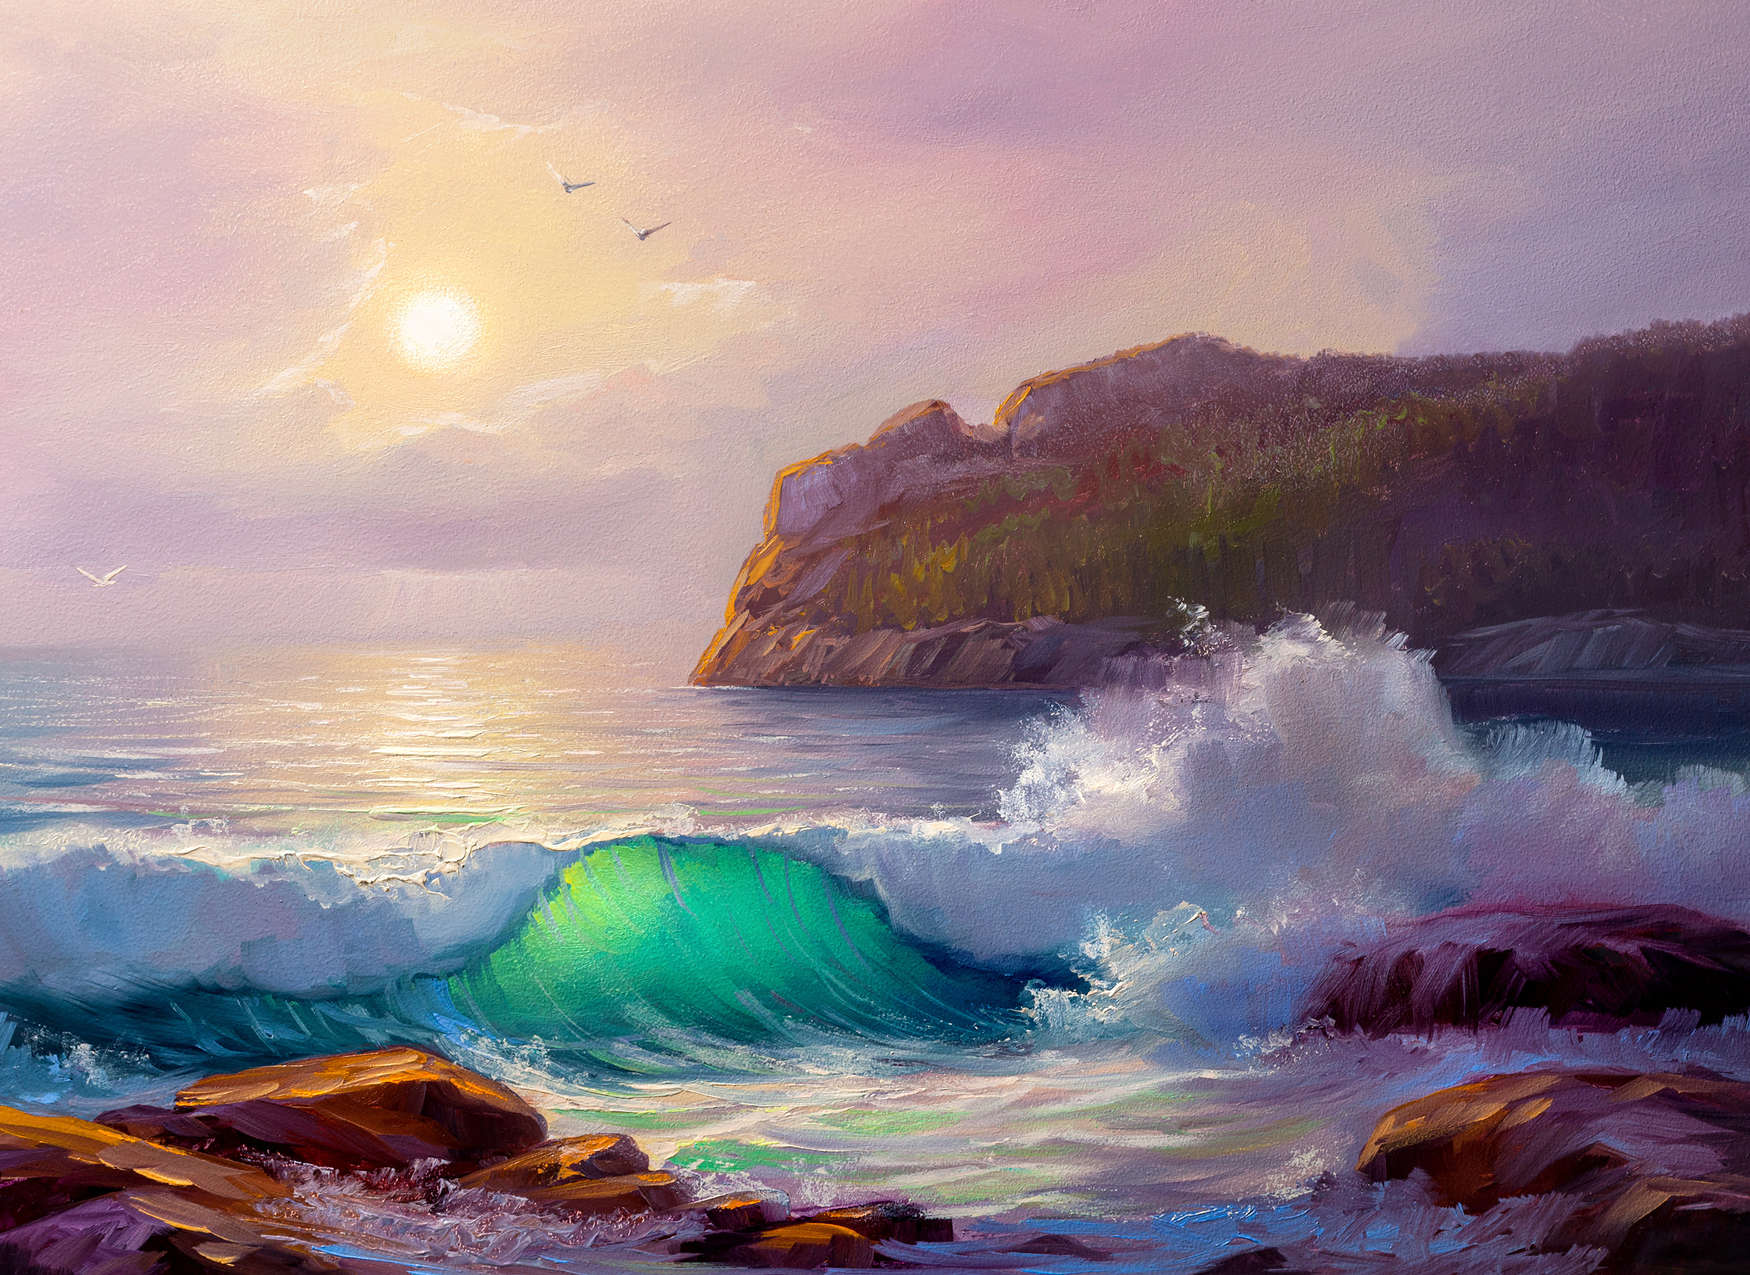             Pintura mural de una costa al amanecer - Azul, Púrpura, Marrón
        